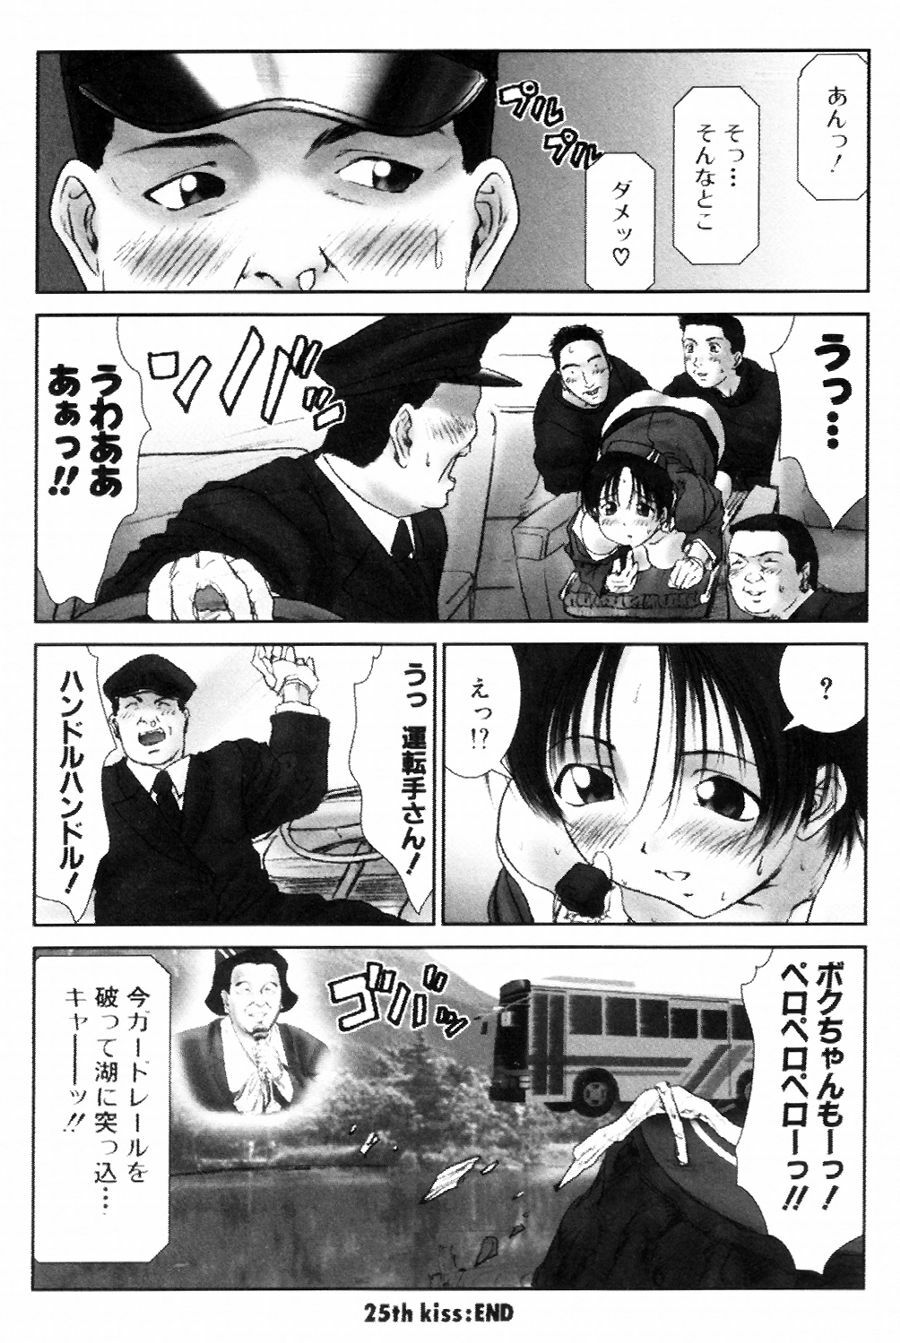 [Ichiro Yumi] i kiss 2 page 16 full